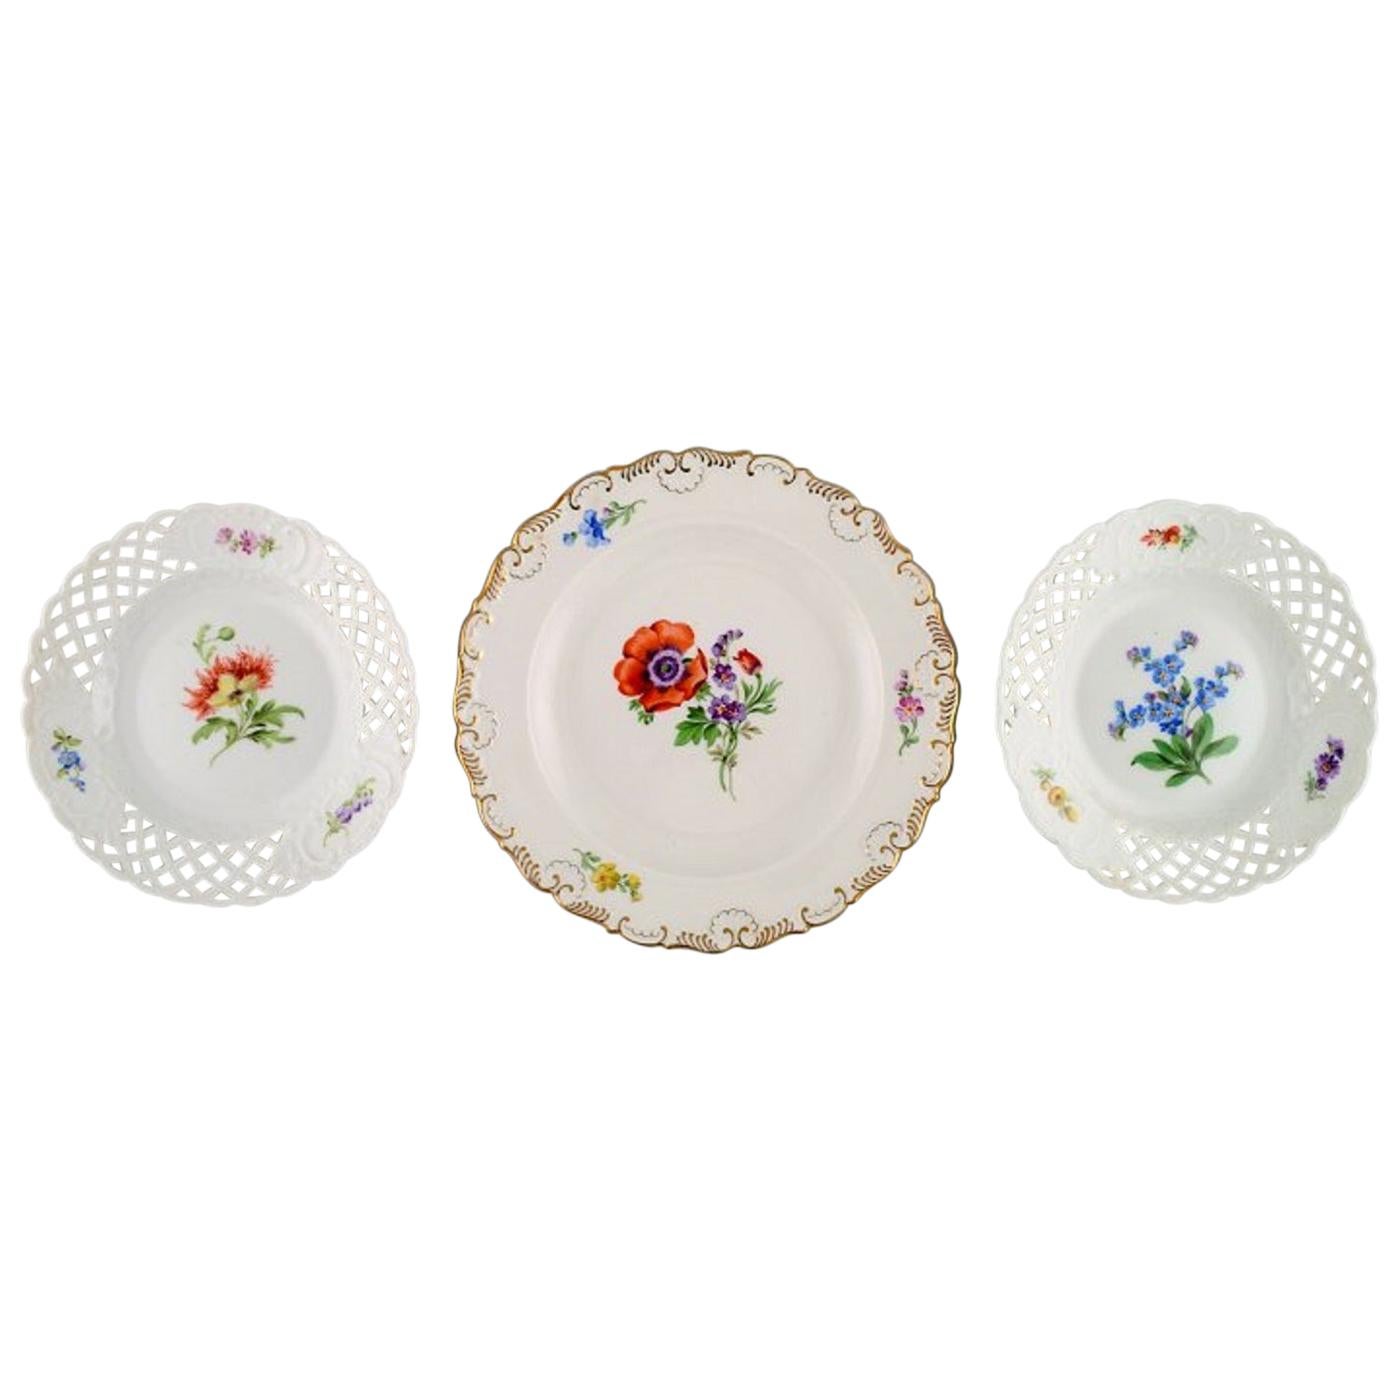 Trois assiettes anciennes de Meissen en porcelaine peinte à la main avec motifs floraux